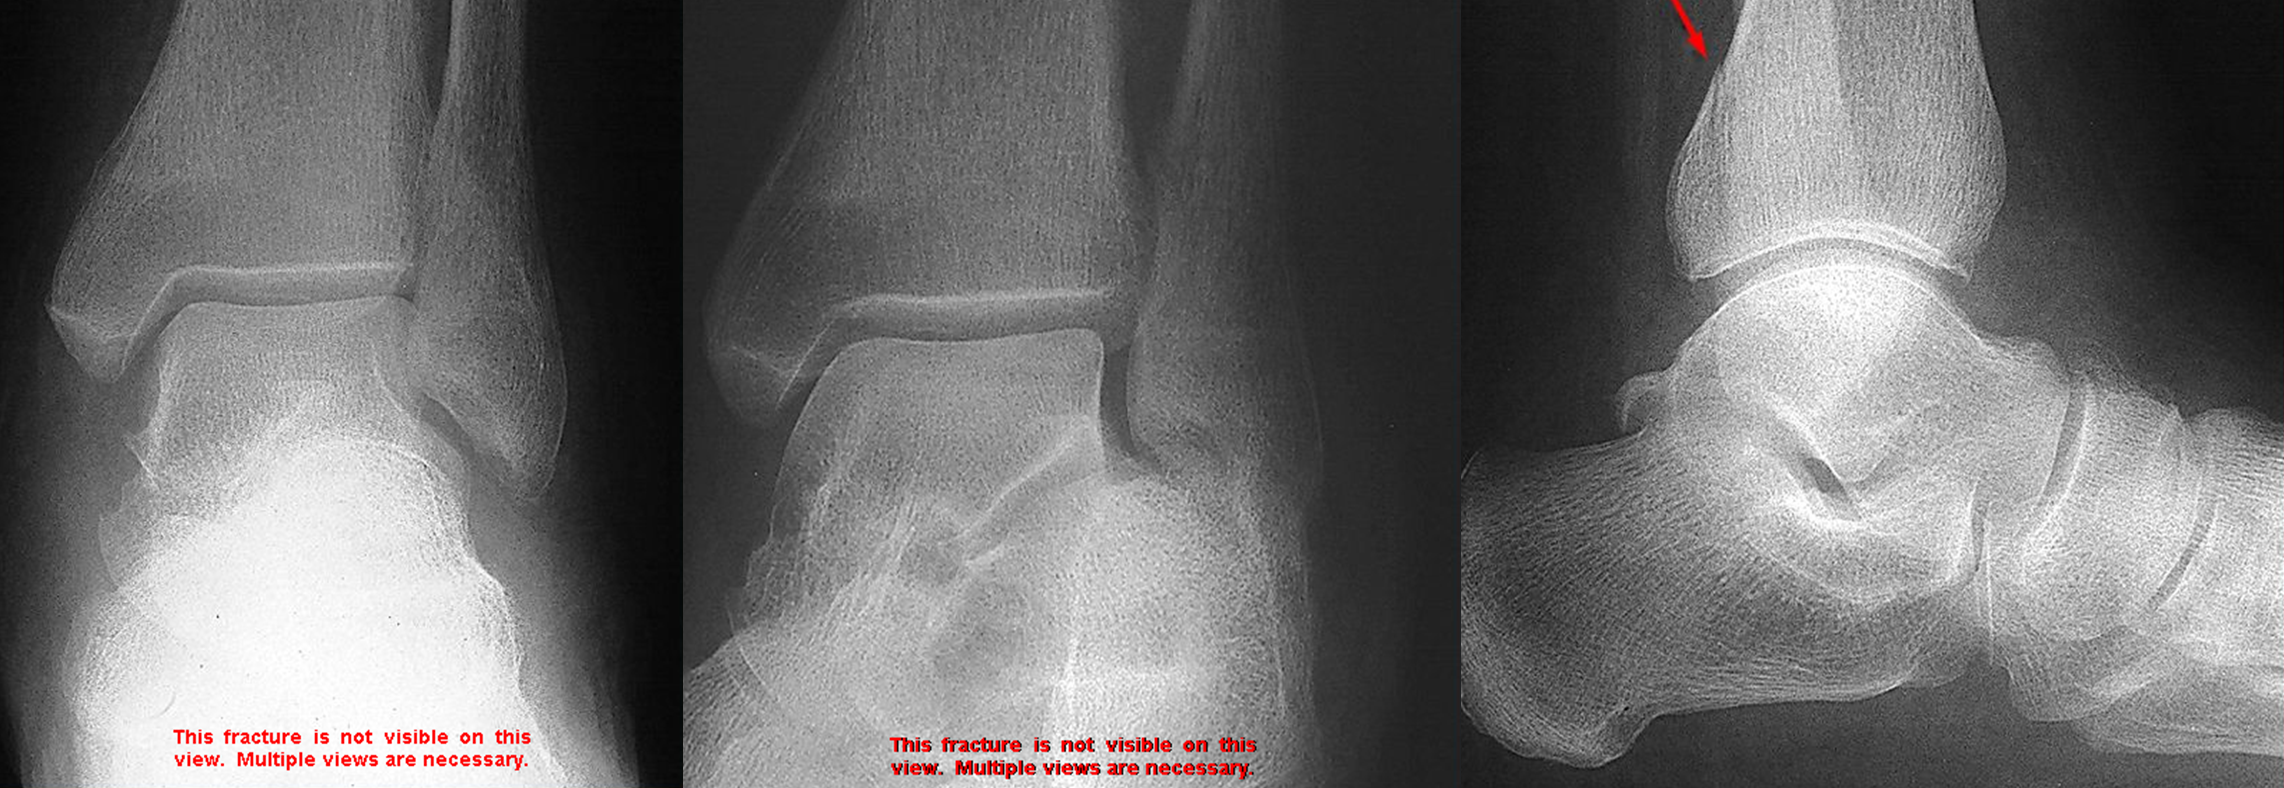 avulsion fracture ankle malleolus